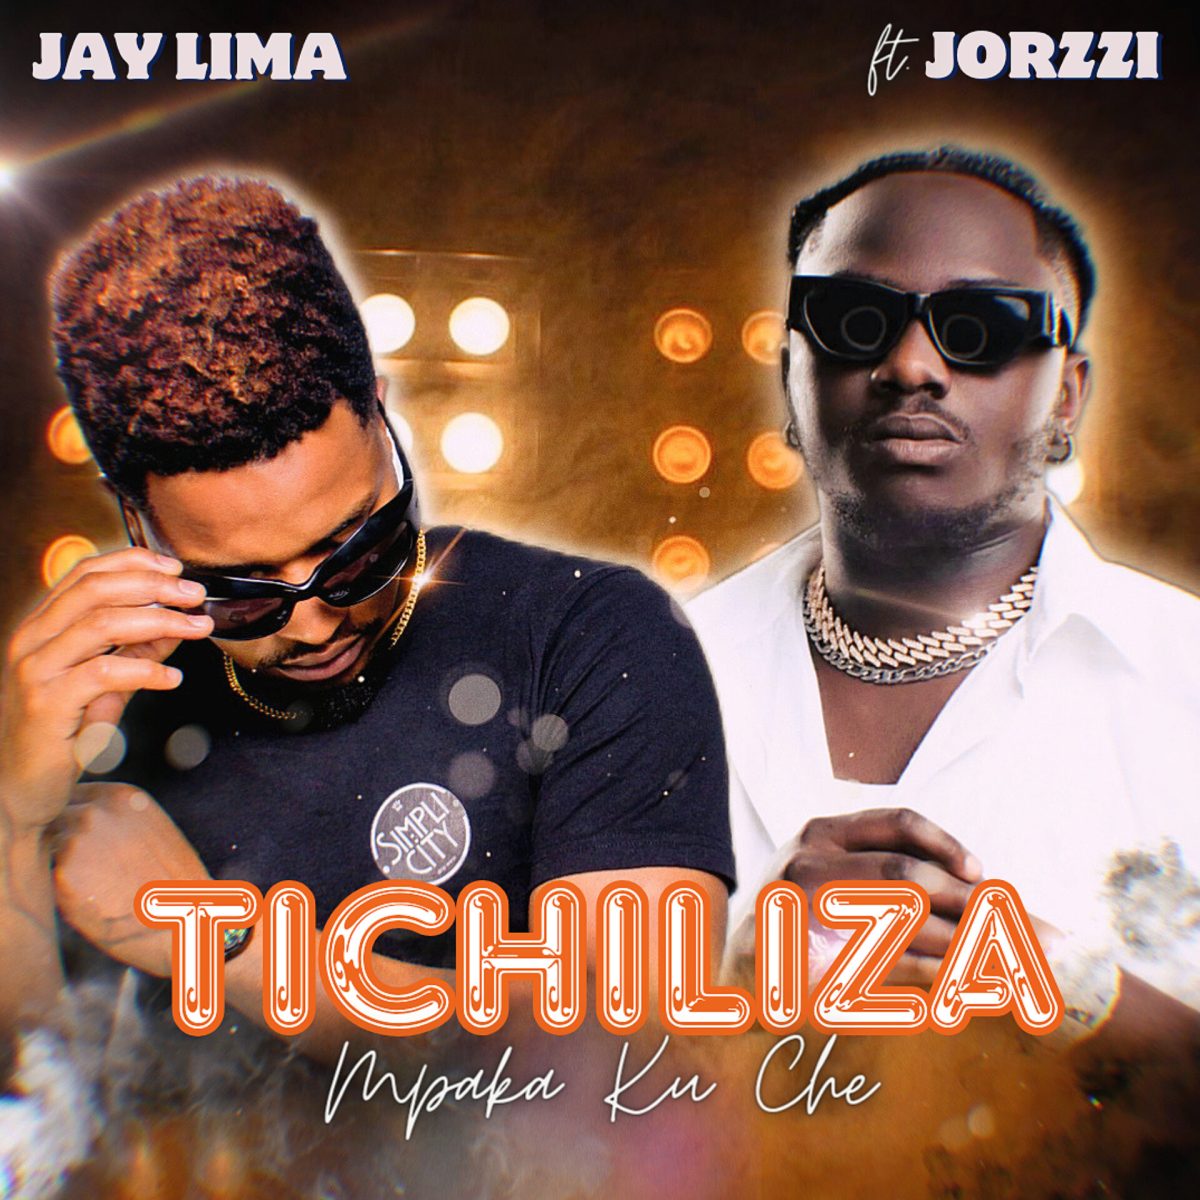 Jay Lima ft. Jorzzi - Tichiliza